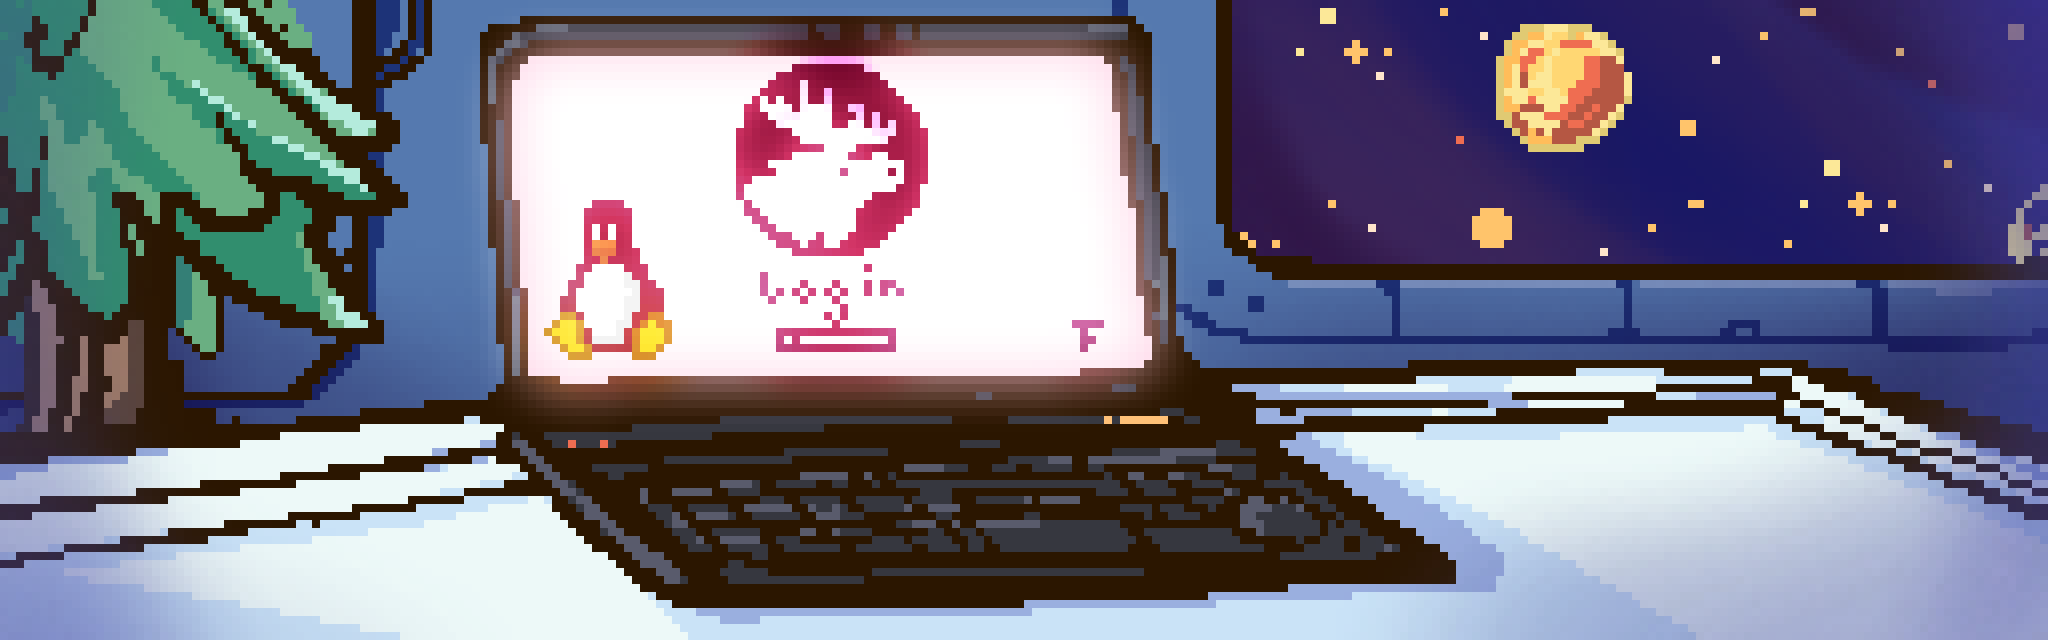 A laptop in pixel art.